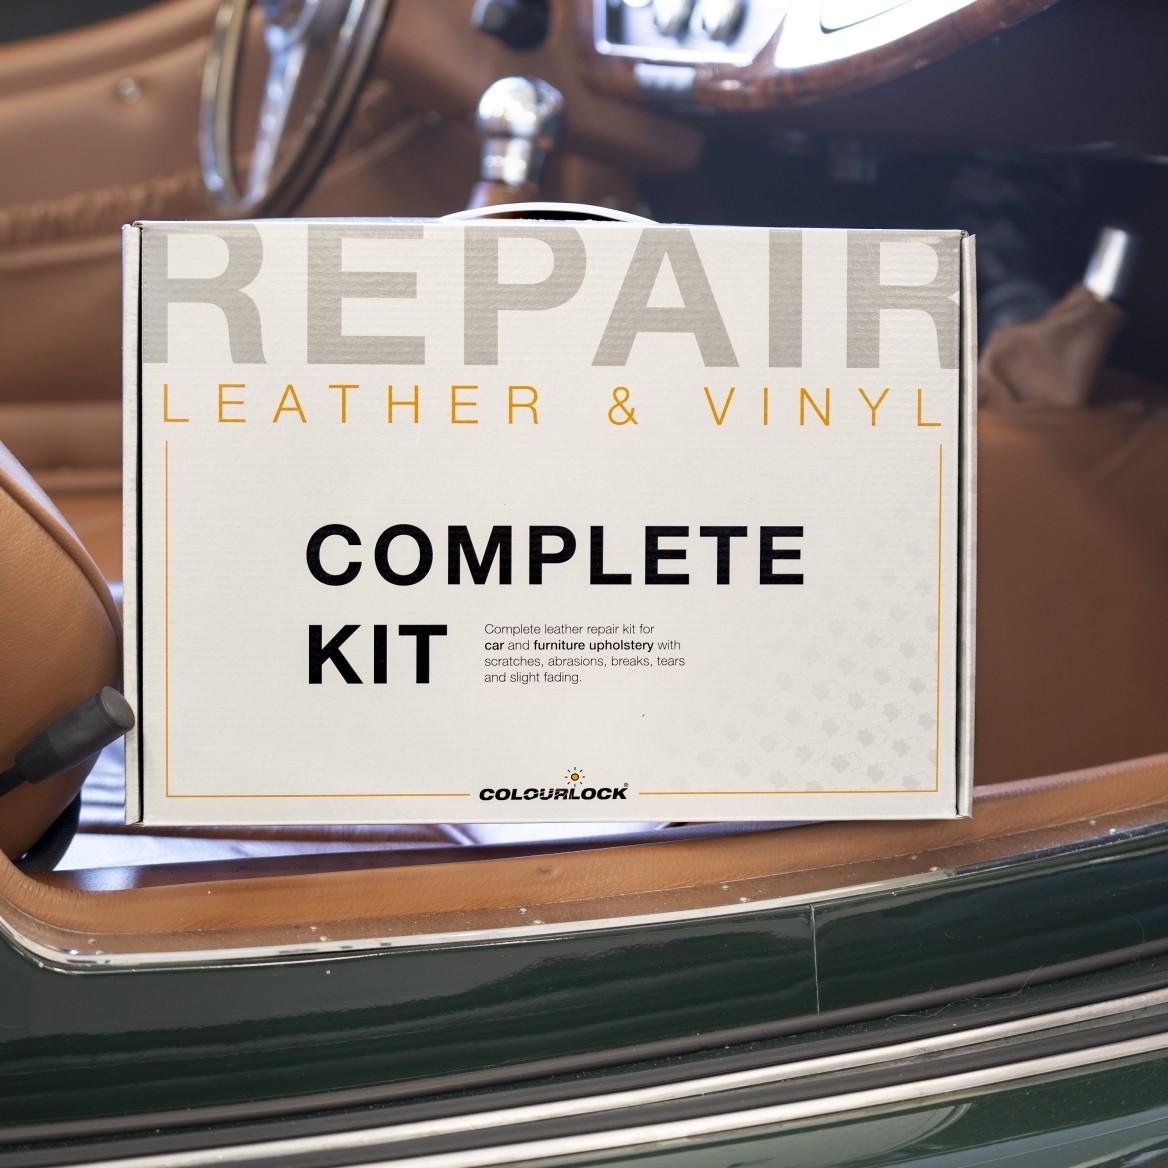 Kit de réparation cuir Auto BMW Dakota beige crème couleur cuir pour cuir  et simili cuir. -  France